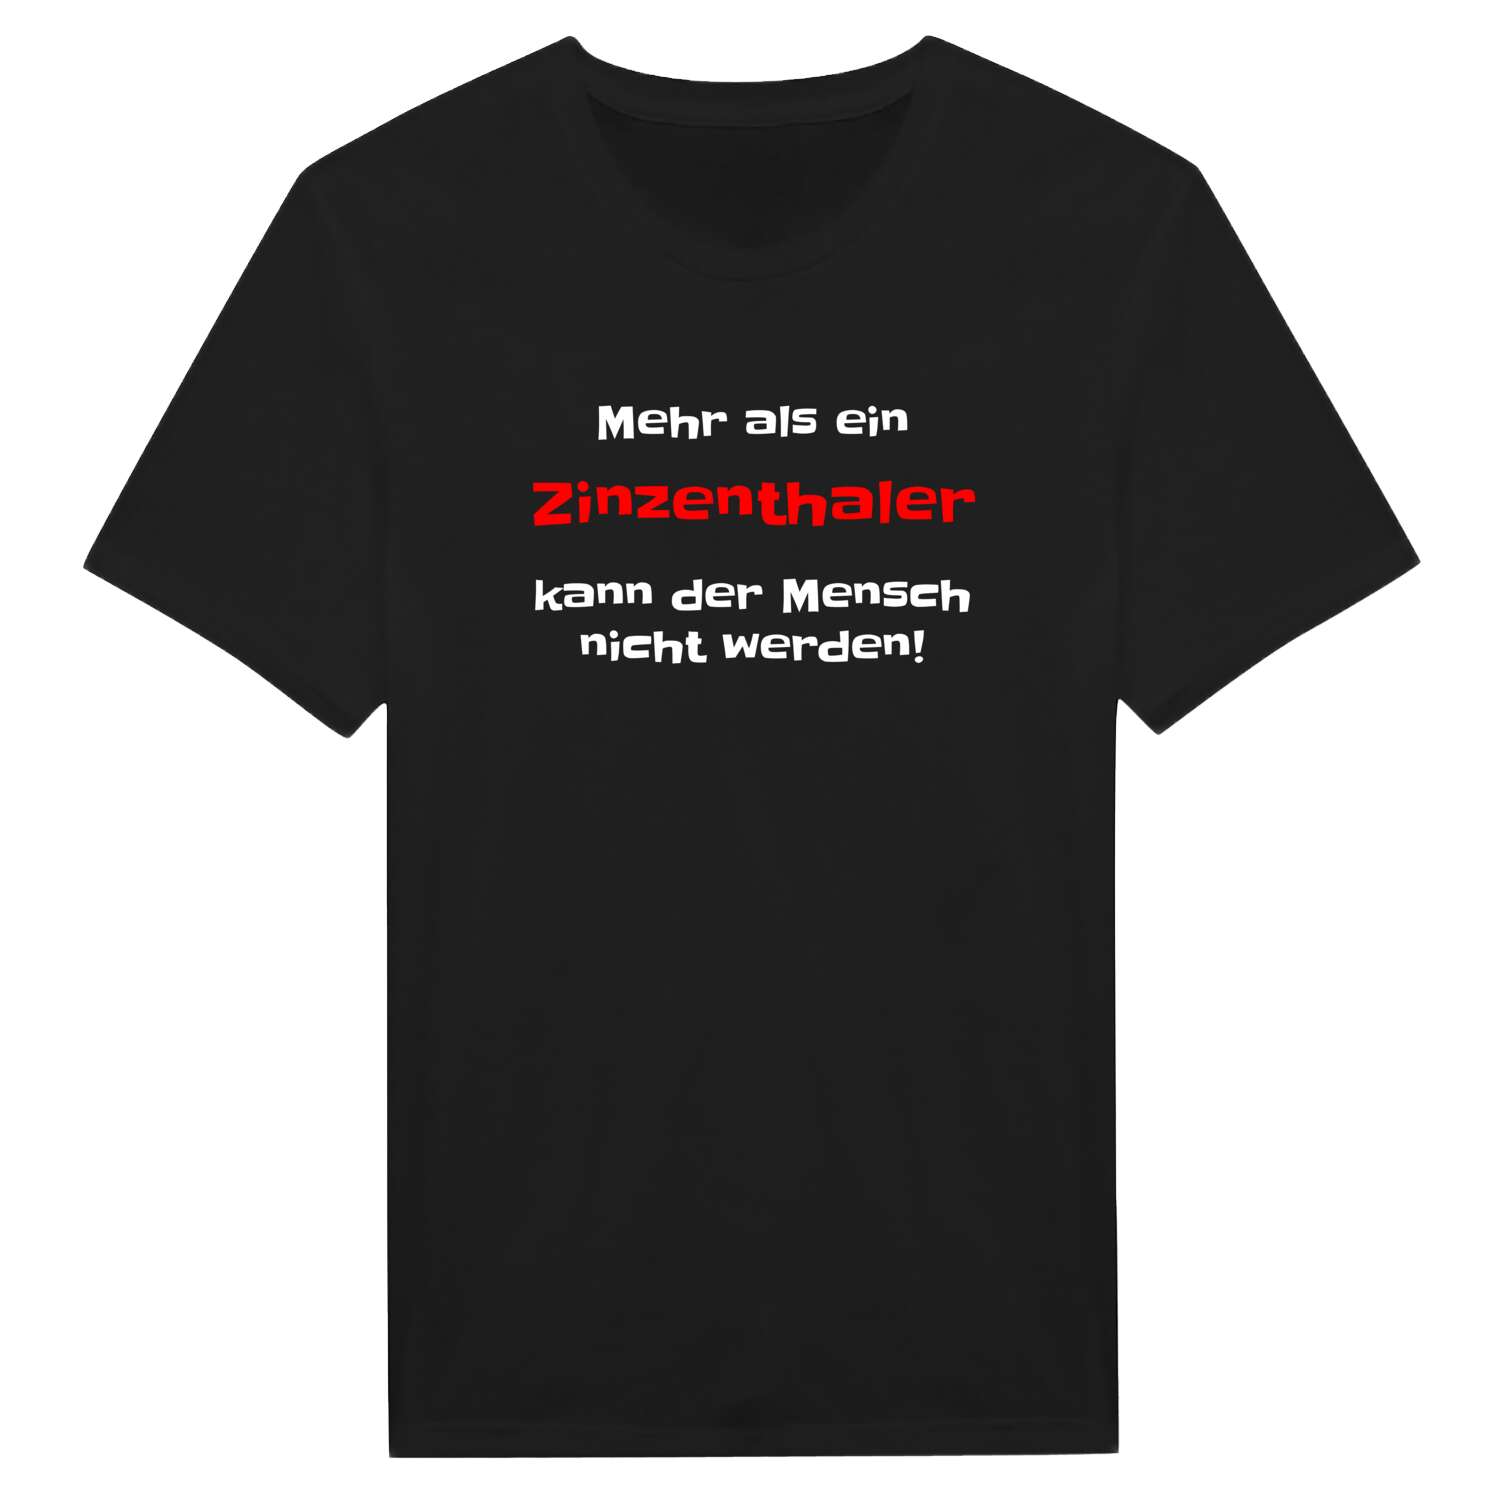 Zinzenthal T-Shirt »Mehr als ein«